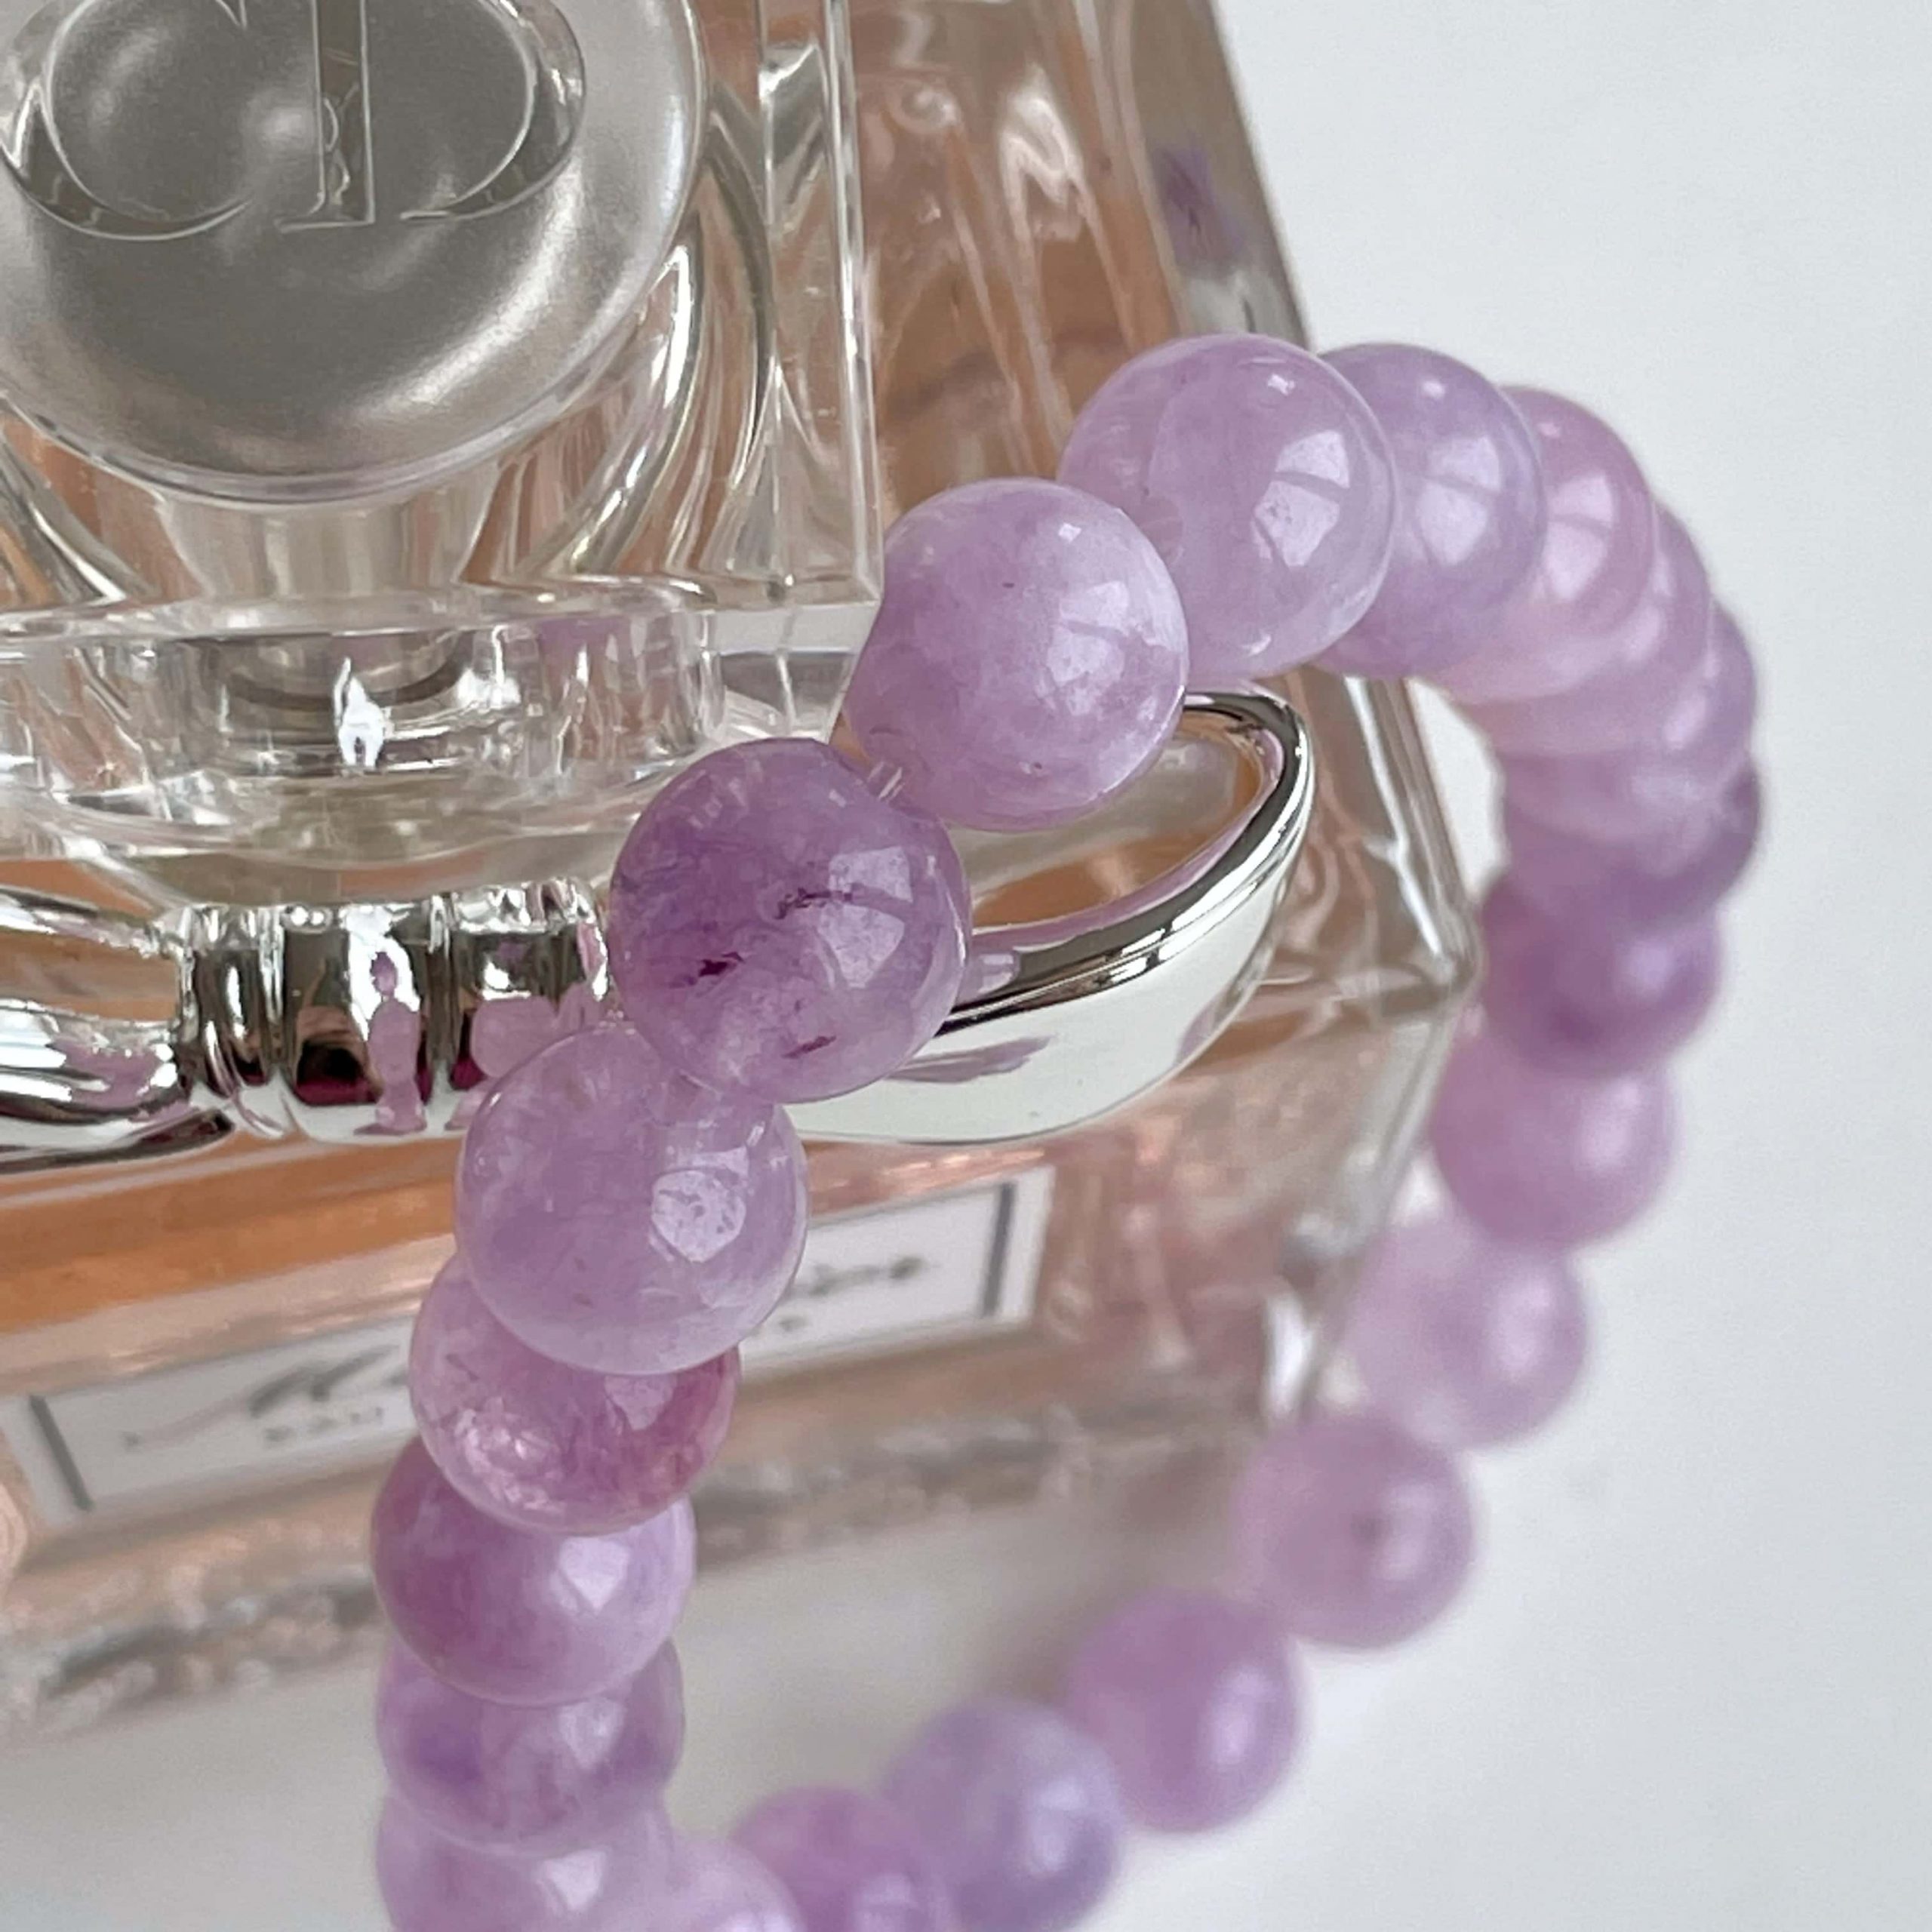 Amethyst Bracelet - Purple Amethyst Beaded Bracelets Light